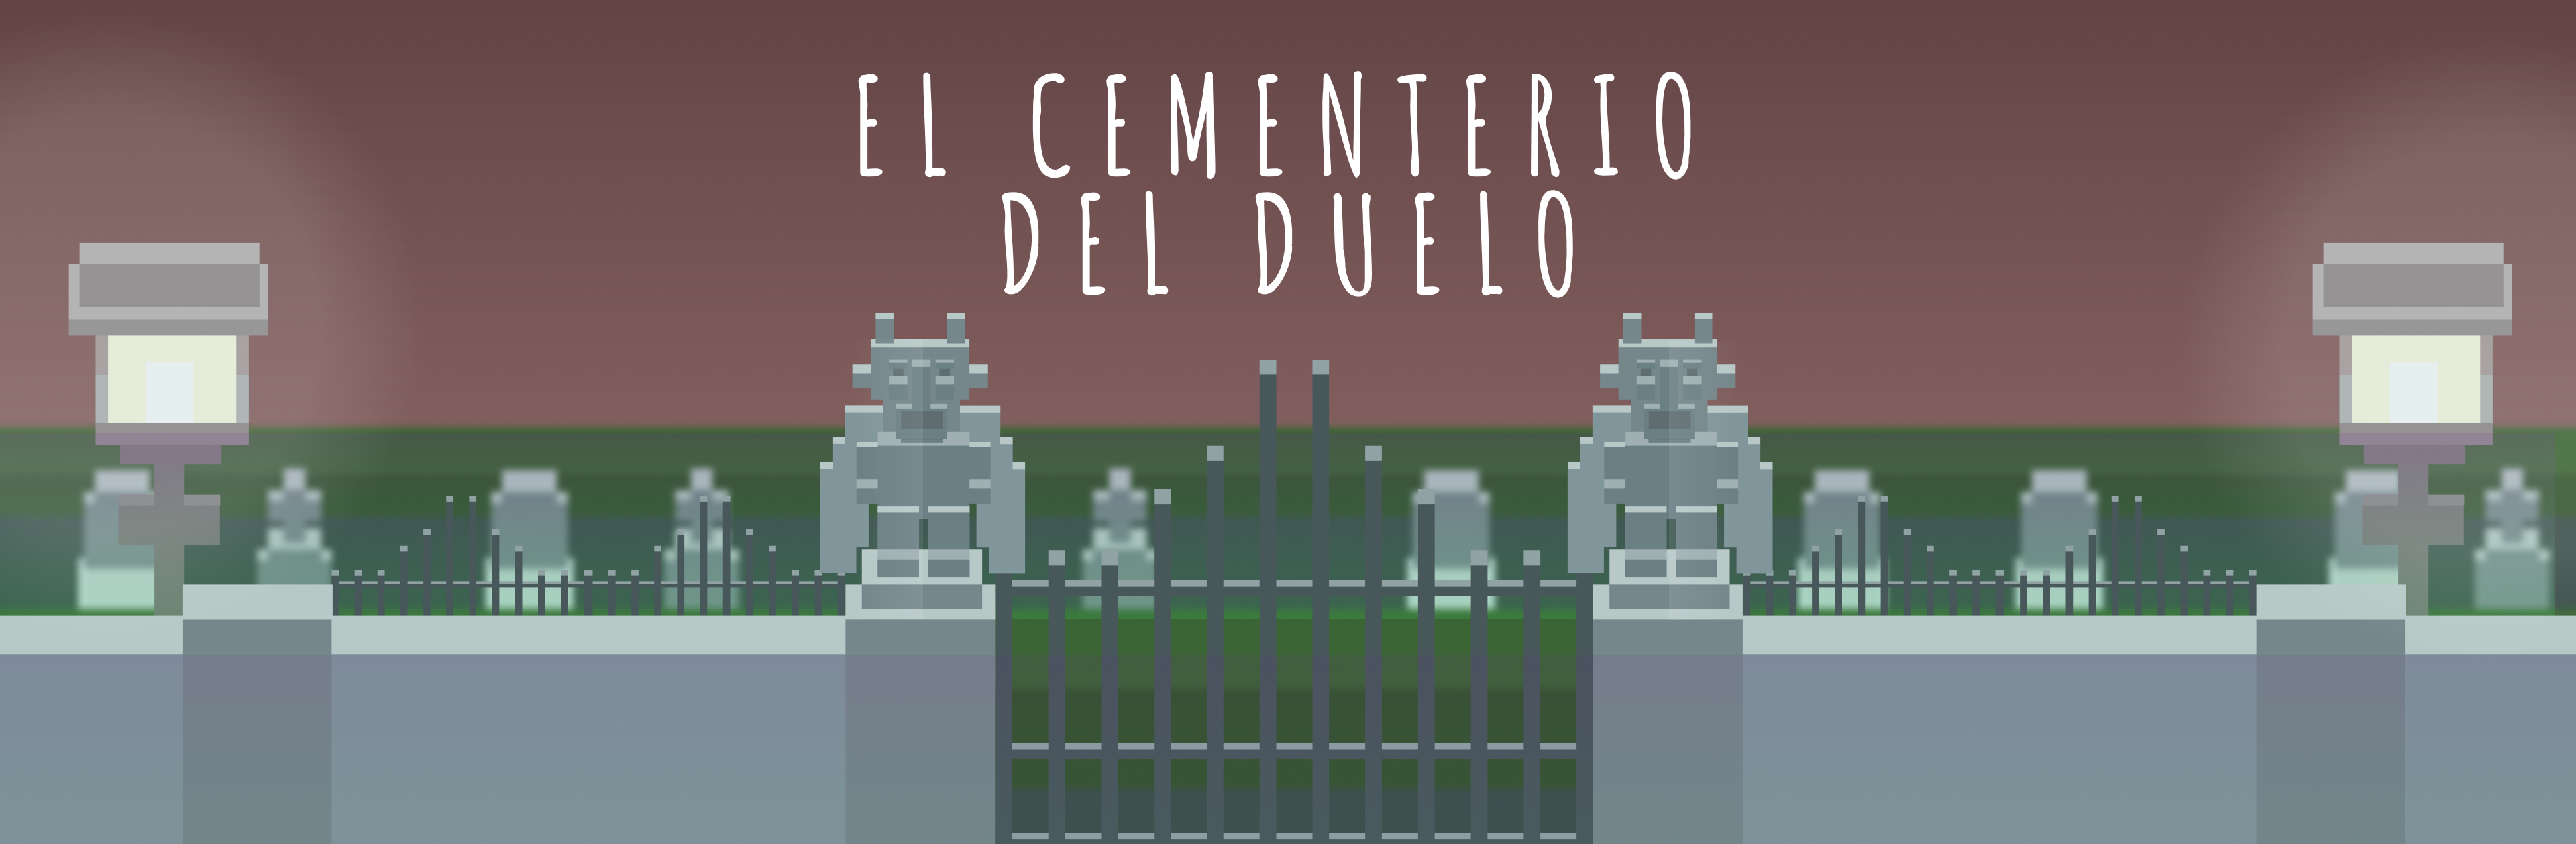 Cementerio del duelo